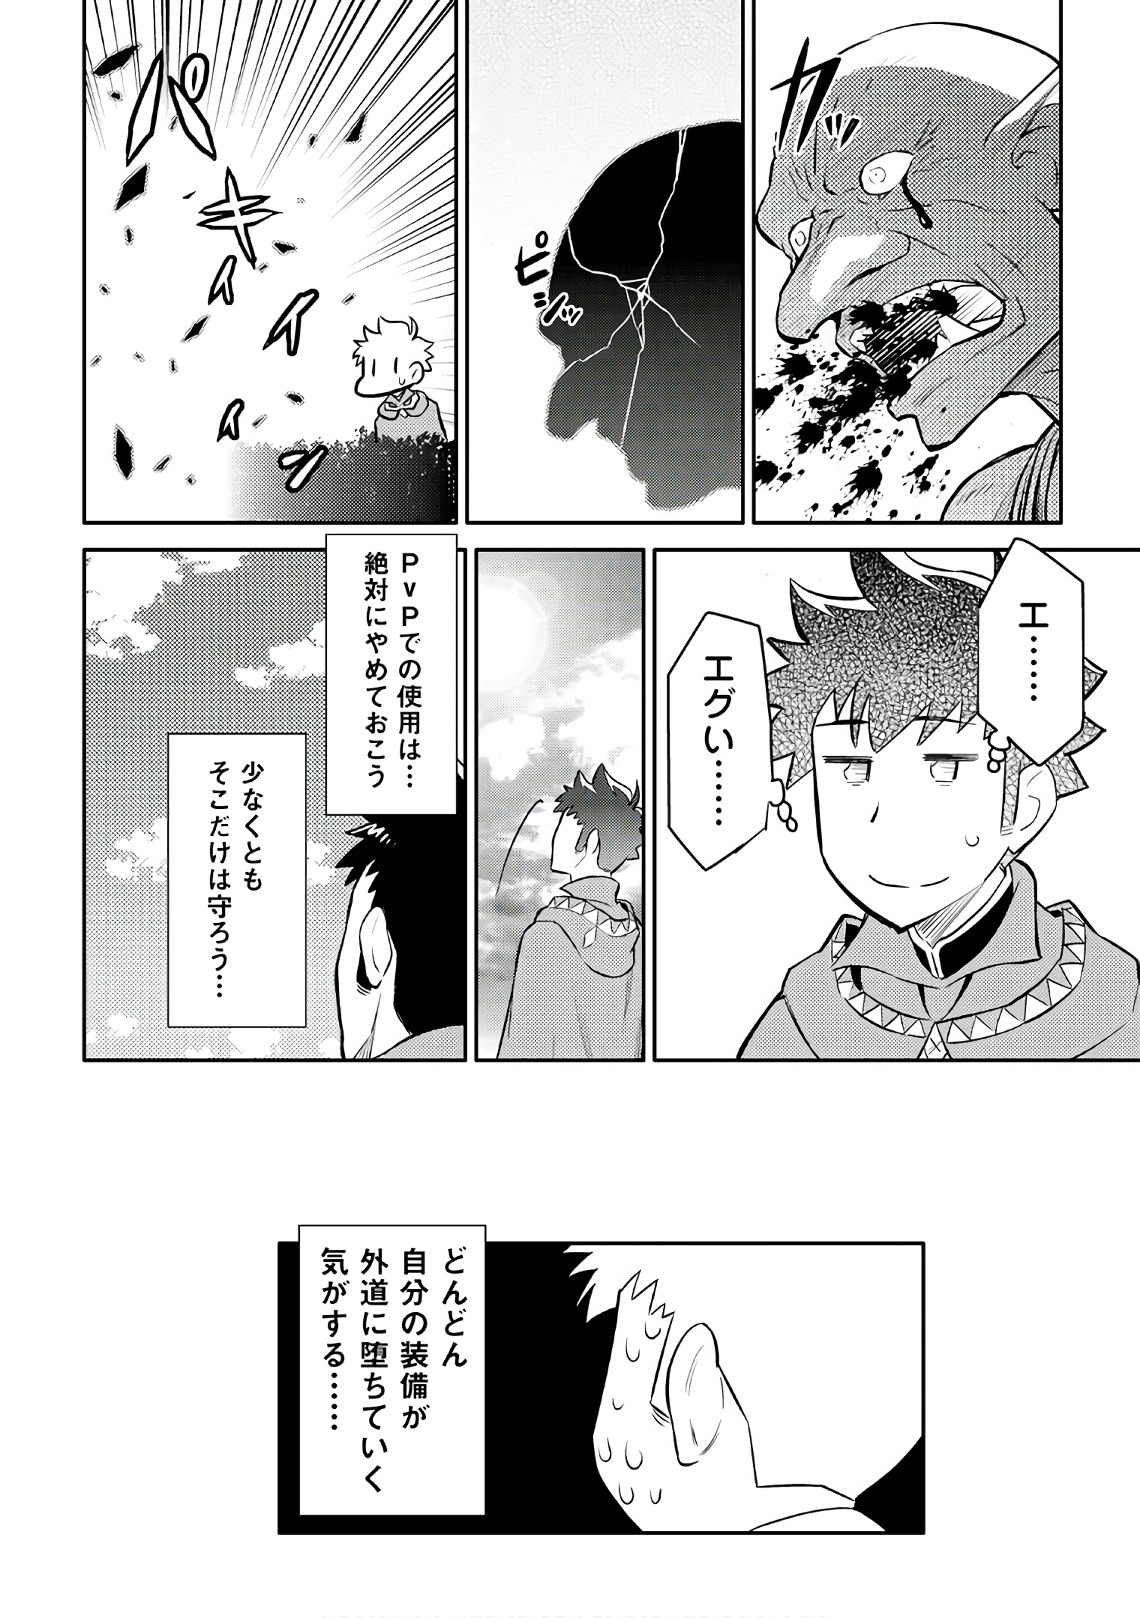 Toaru Ossan no VRMMO Katsudouki - Chapter 39 - Page 24